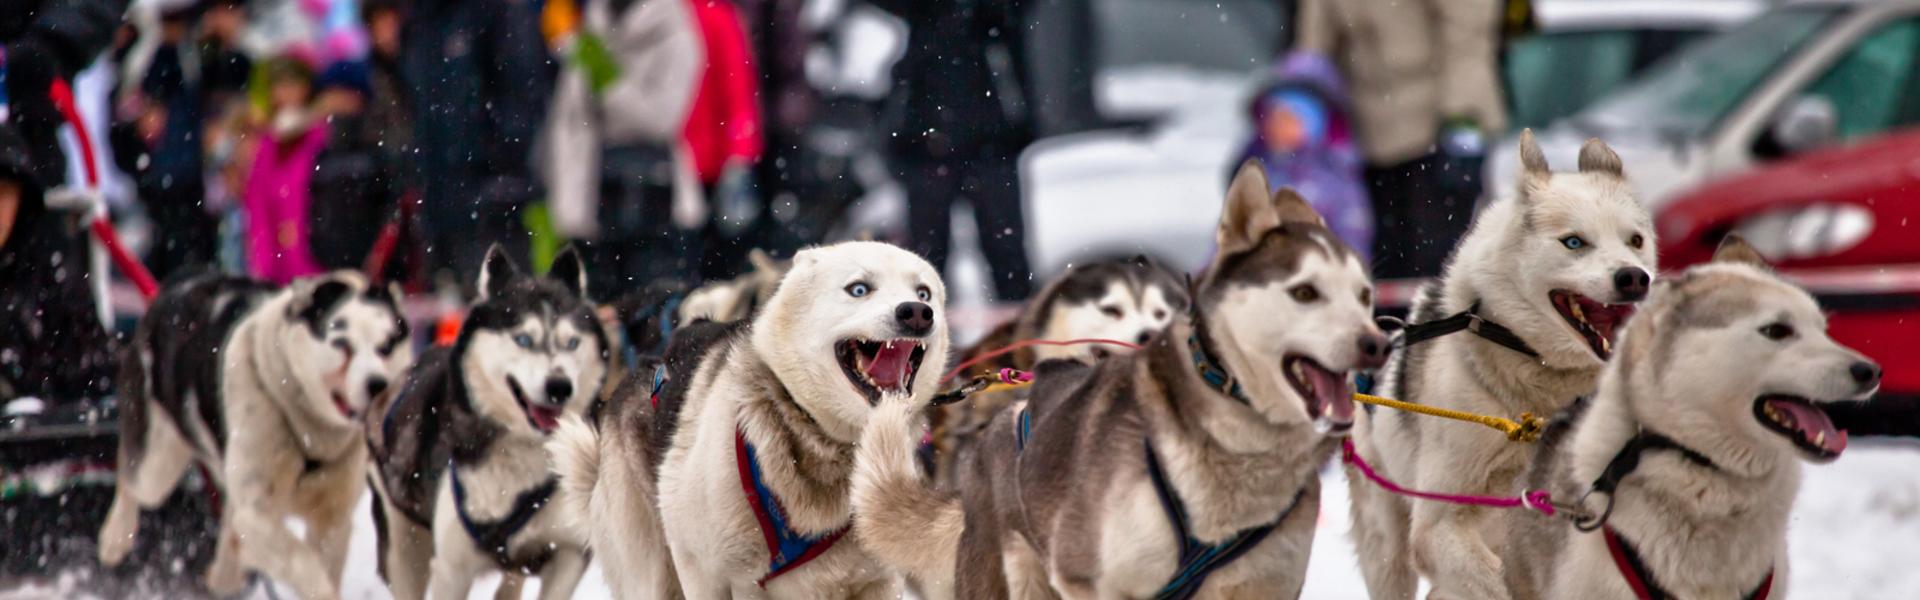 Obrázok: Małopolska zimą. Psie zaprzęgi – rekreacja dla miłośników ruchu i zwierząt